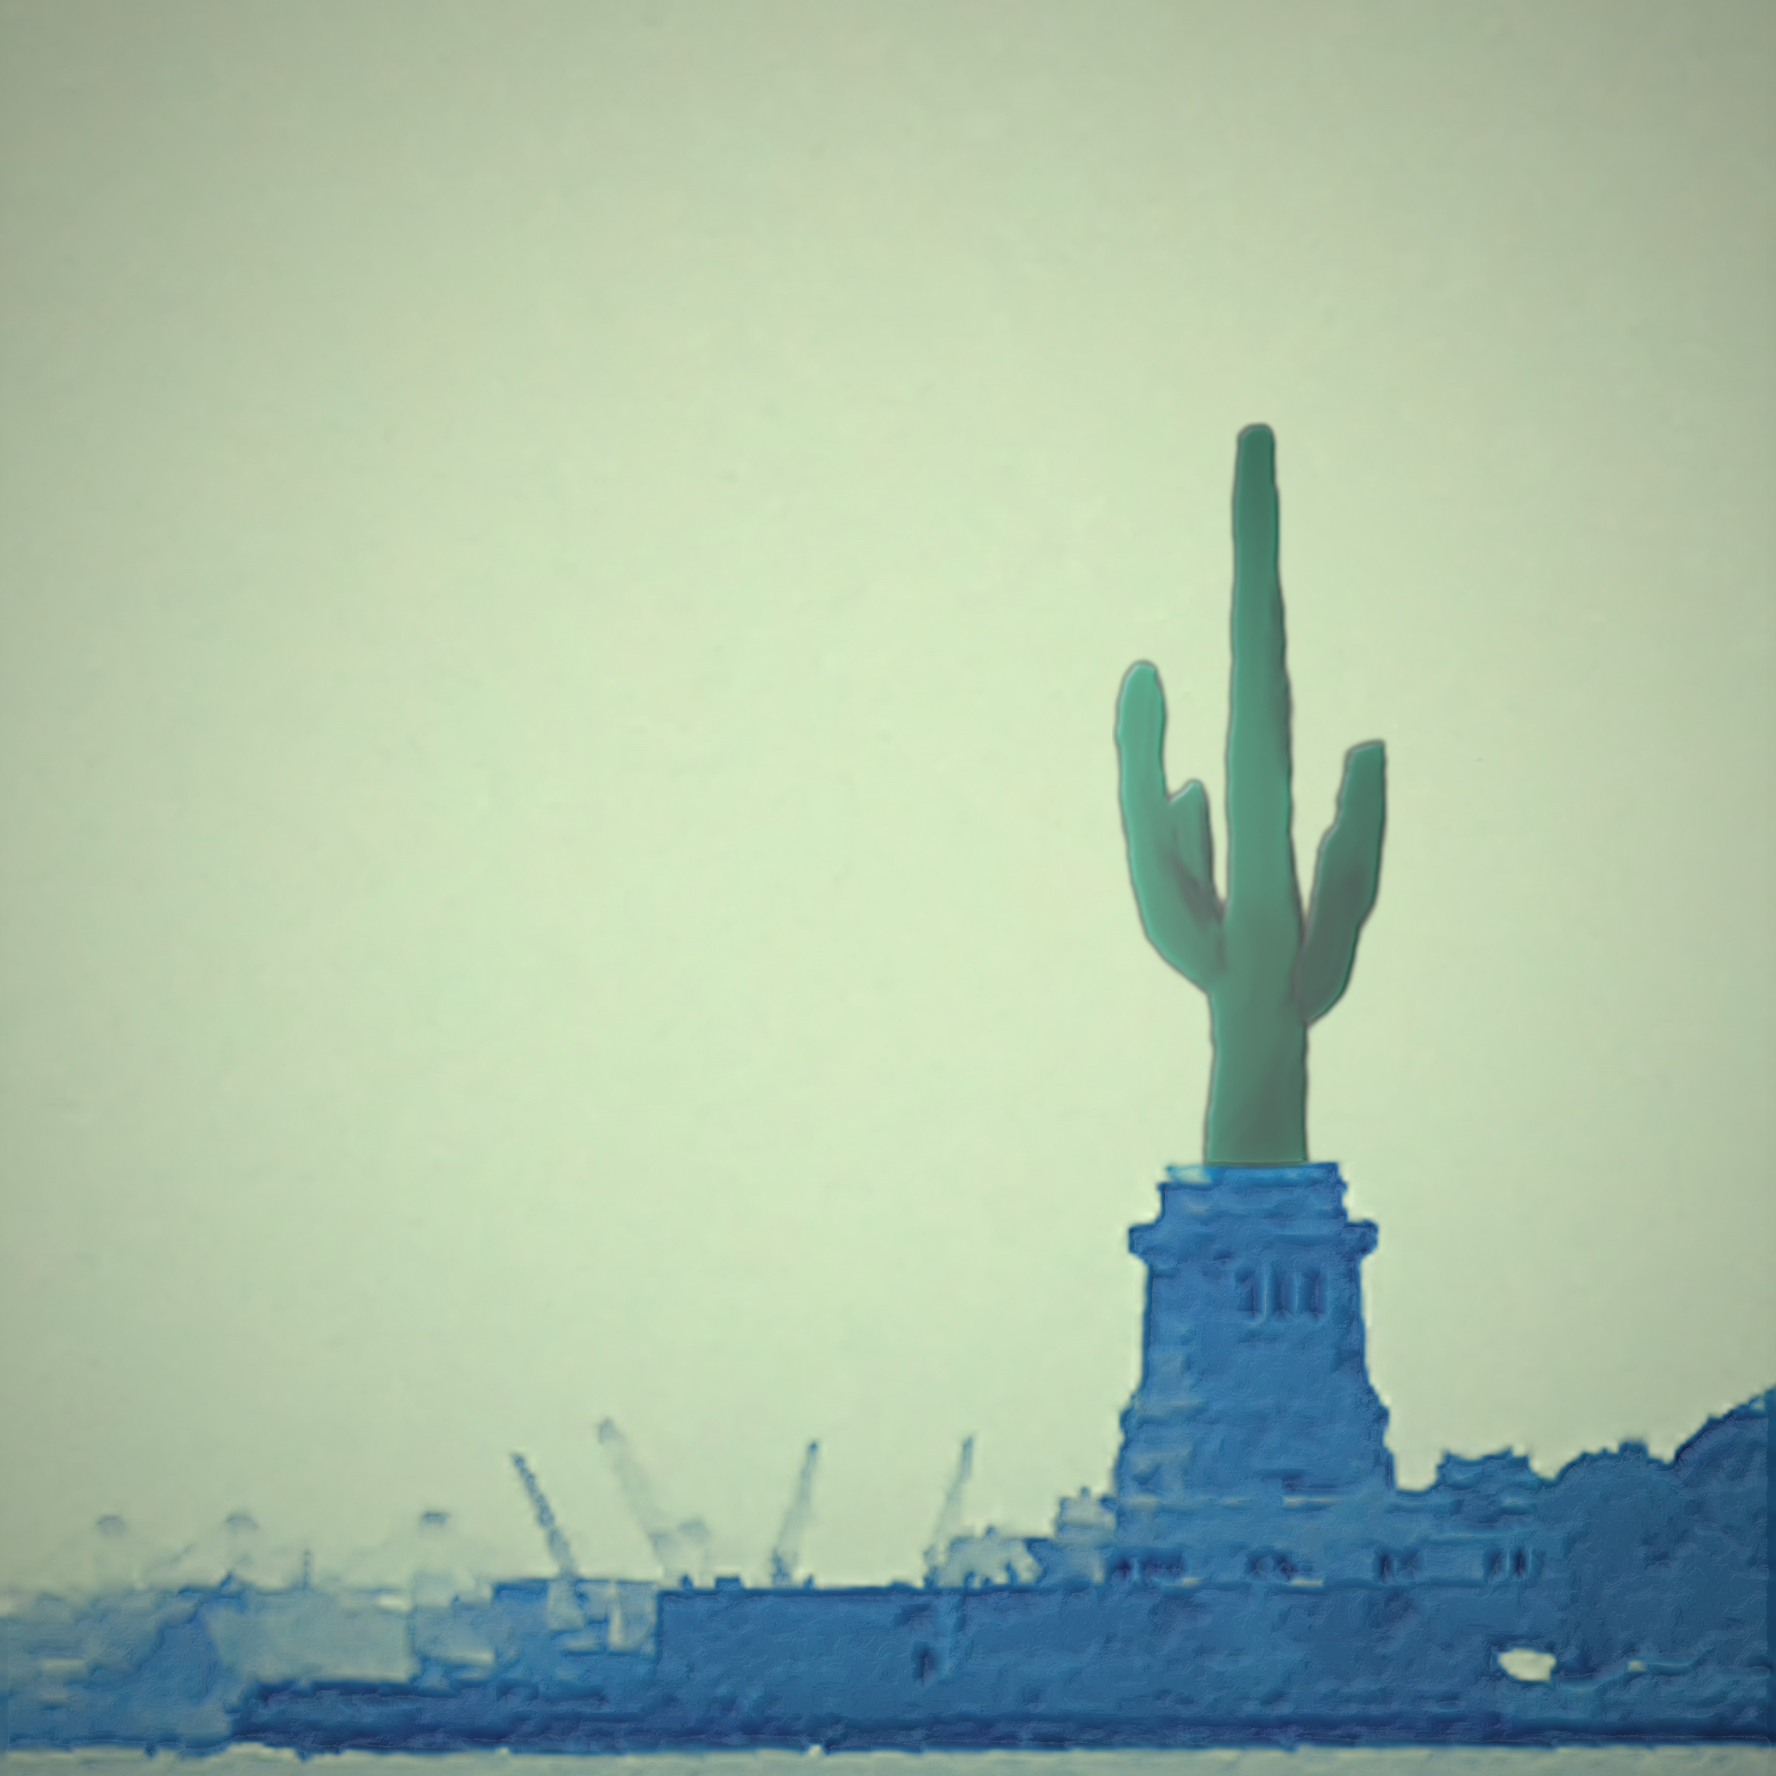 The Statue of Cactus